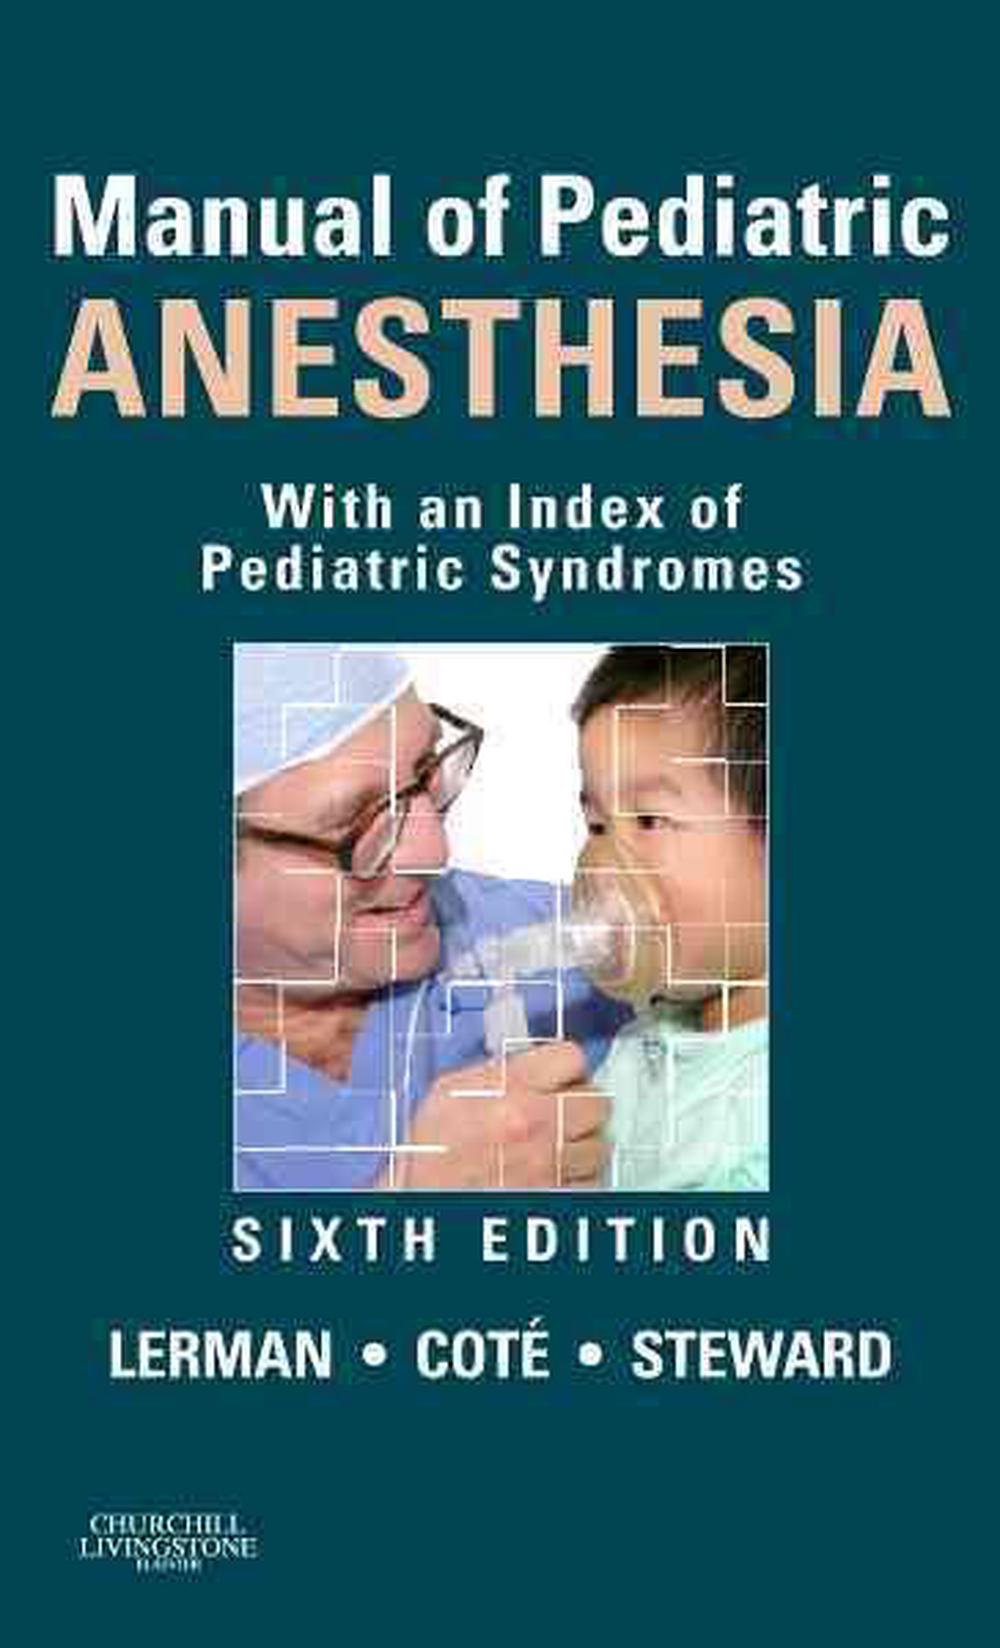 pediatric anesthesia thesis topics